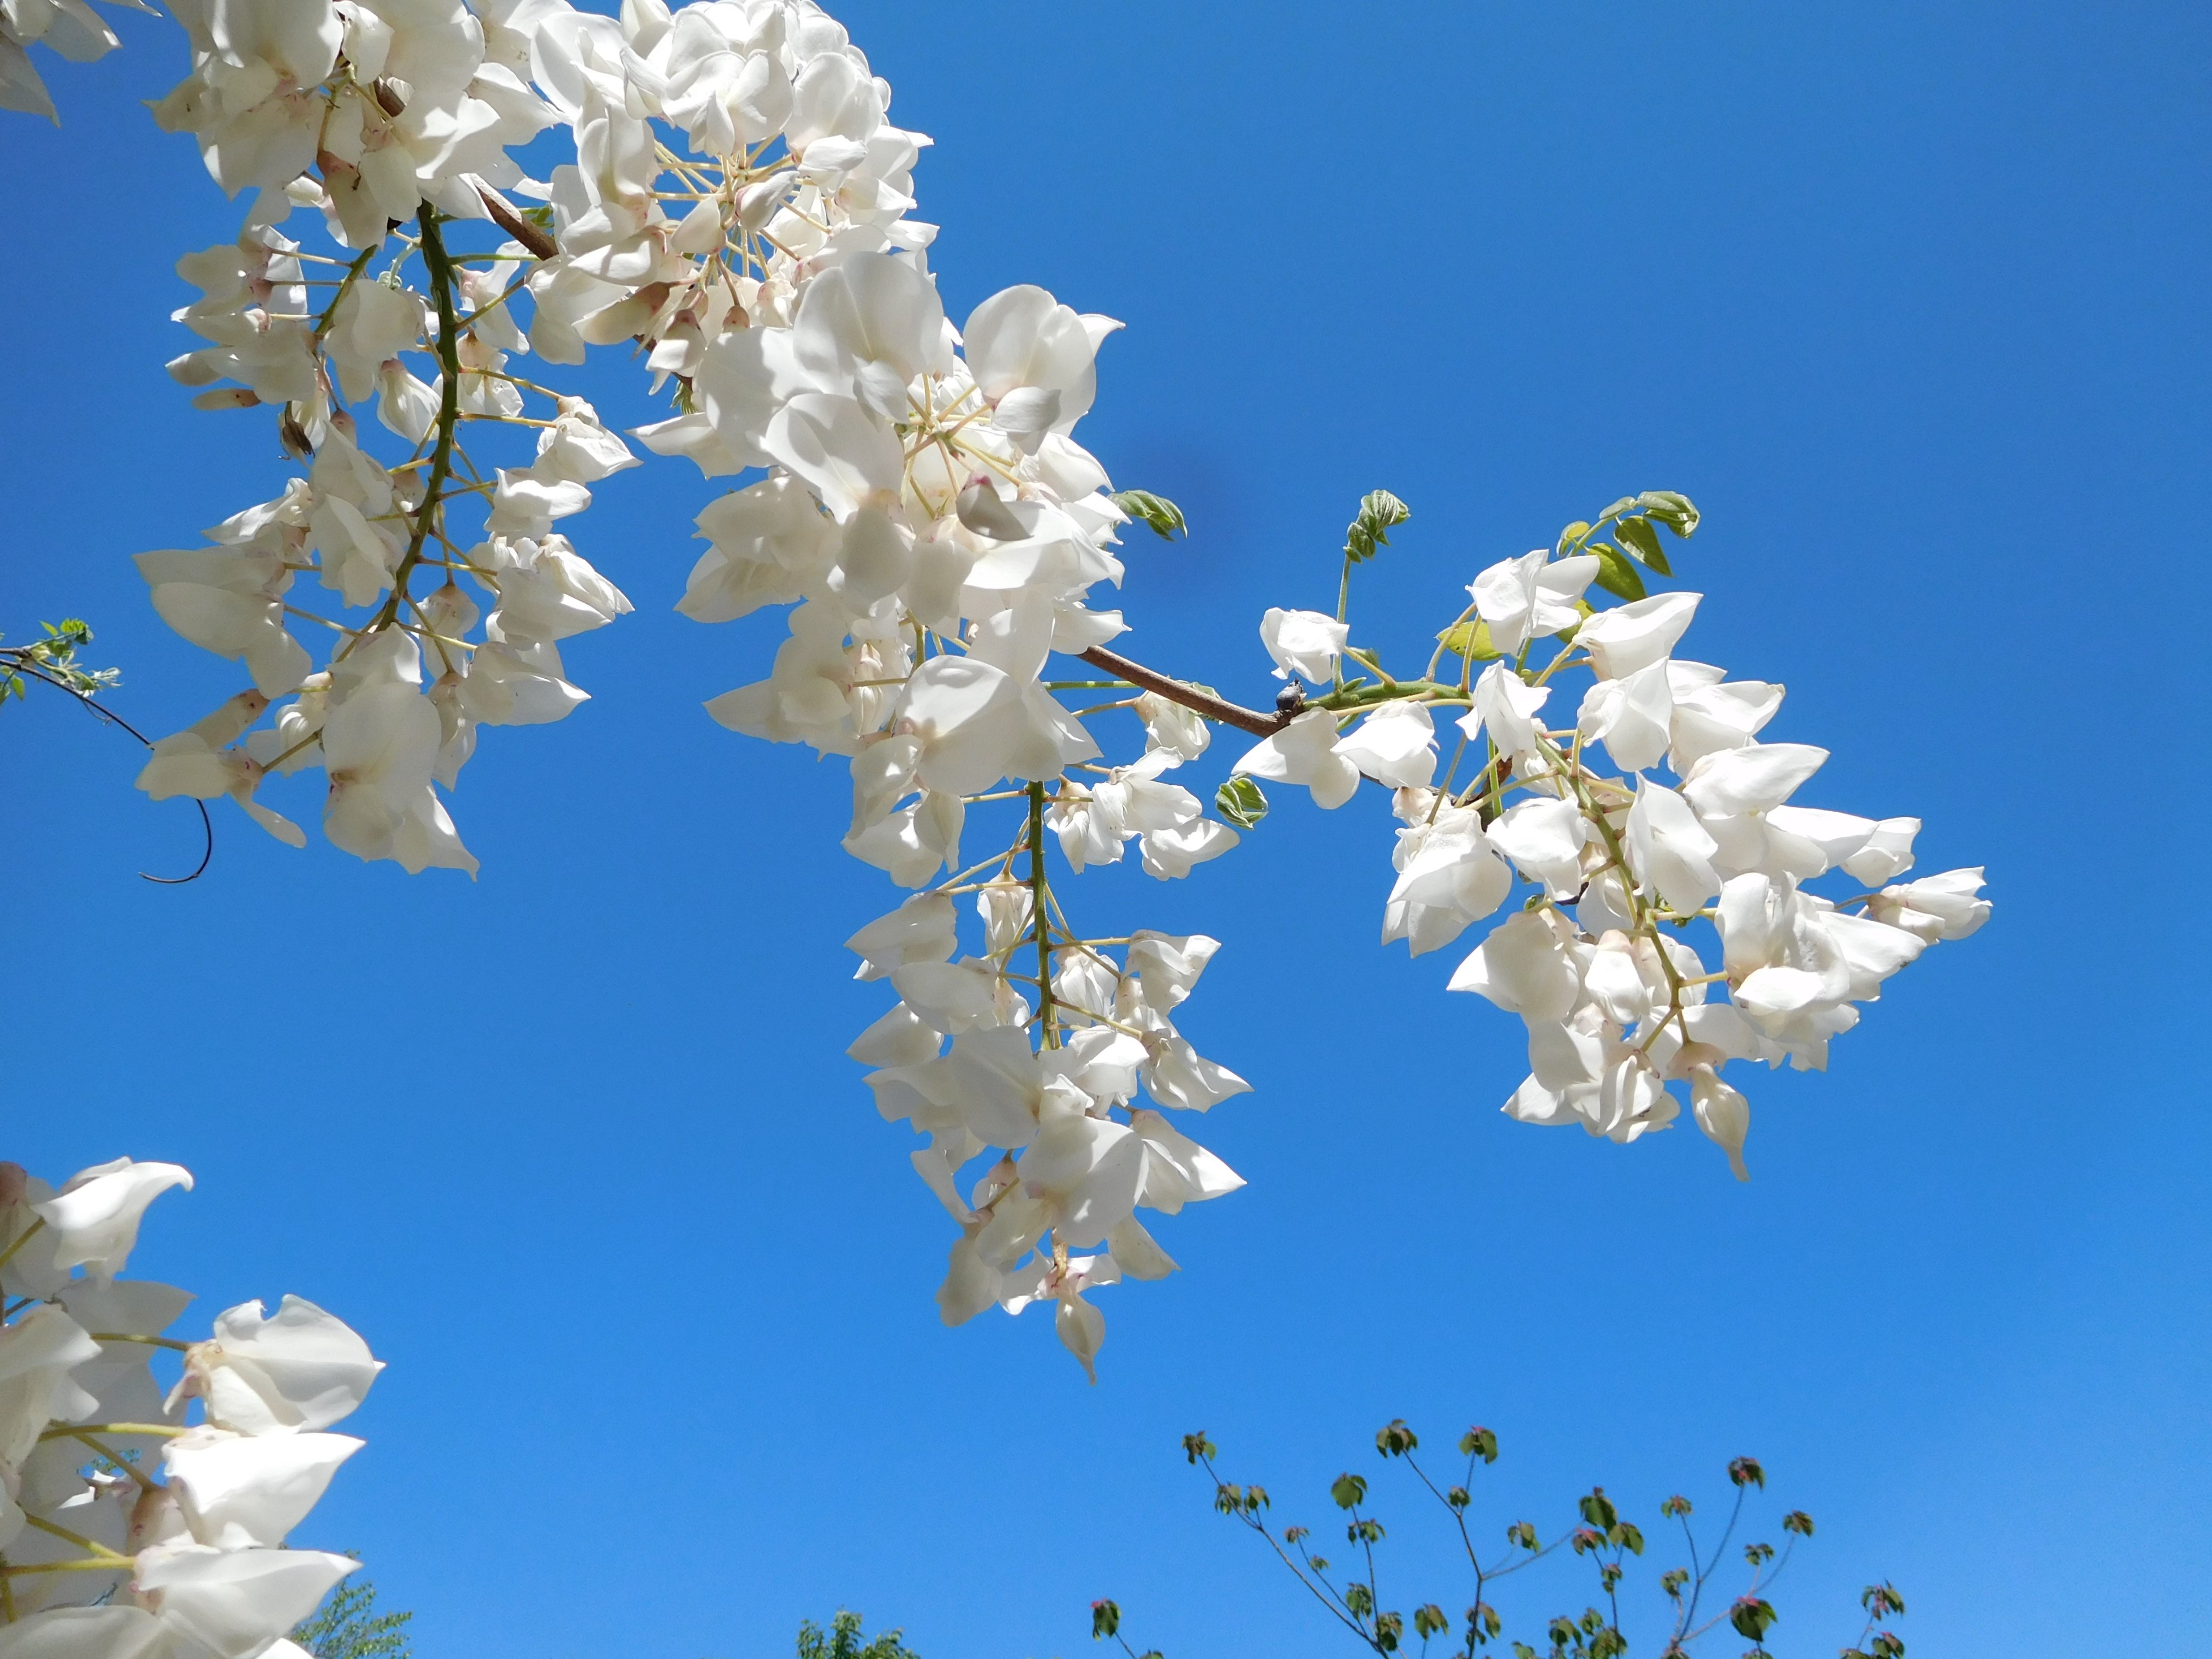 تويتر ひろふみ いわた Hirofumi Iwata 身体改善 散歩 花鳥写真垢 على تويتر 令和3年4月7日 葉桜の撮影場所に白い 藤の花 が咲いていました 青空に白い花が 美しいです この写真を観て外出する勇気が出れば幸いです 花言葉 優しさ 歓迎 決して離れない 恋に酔う